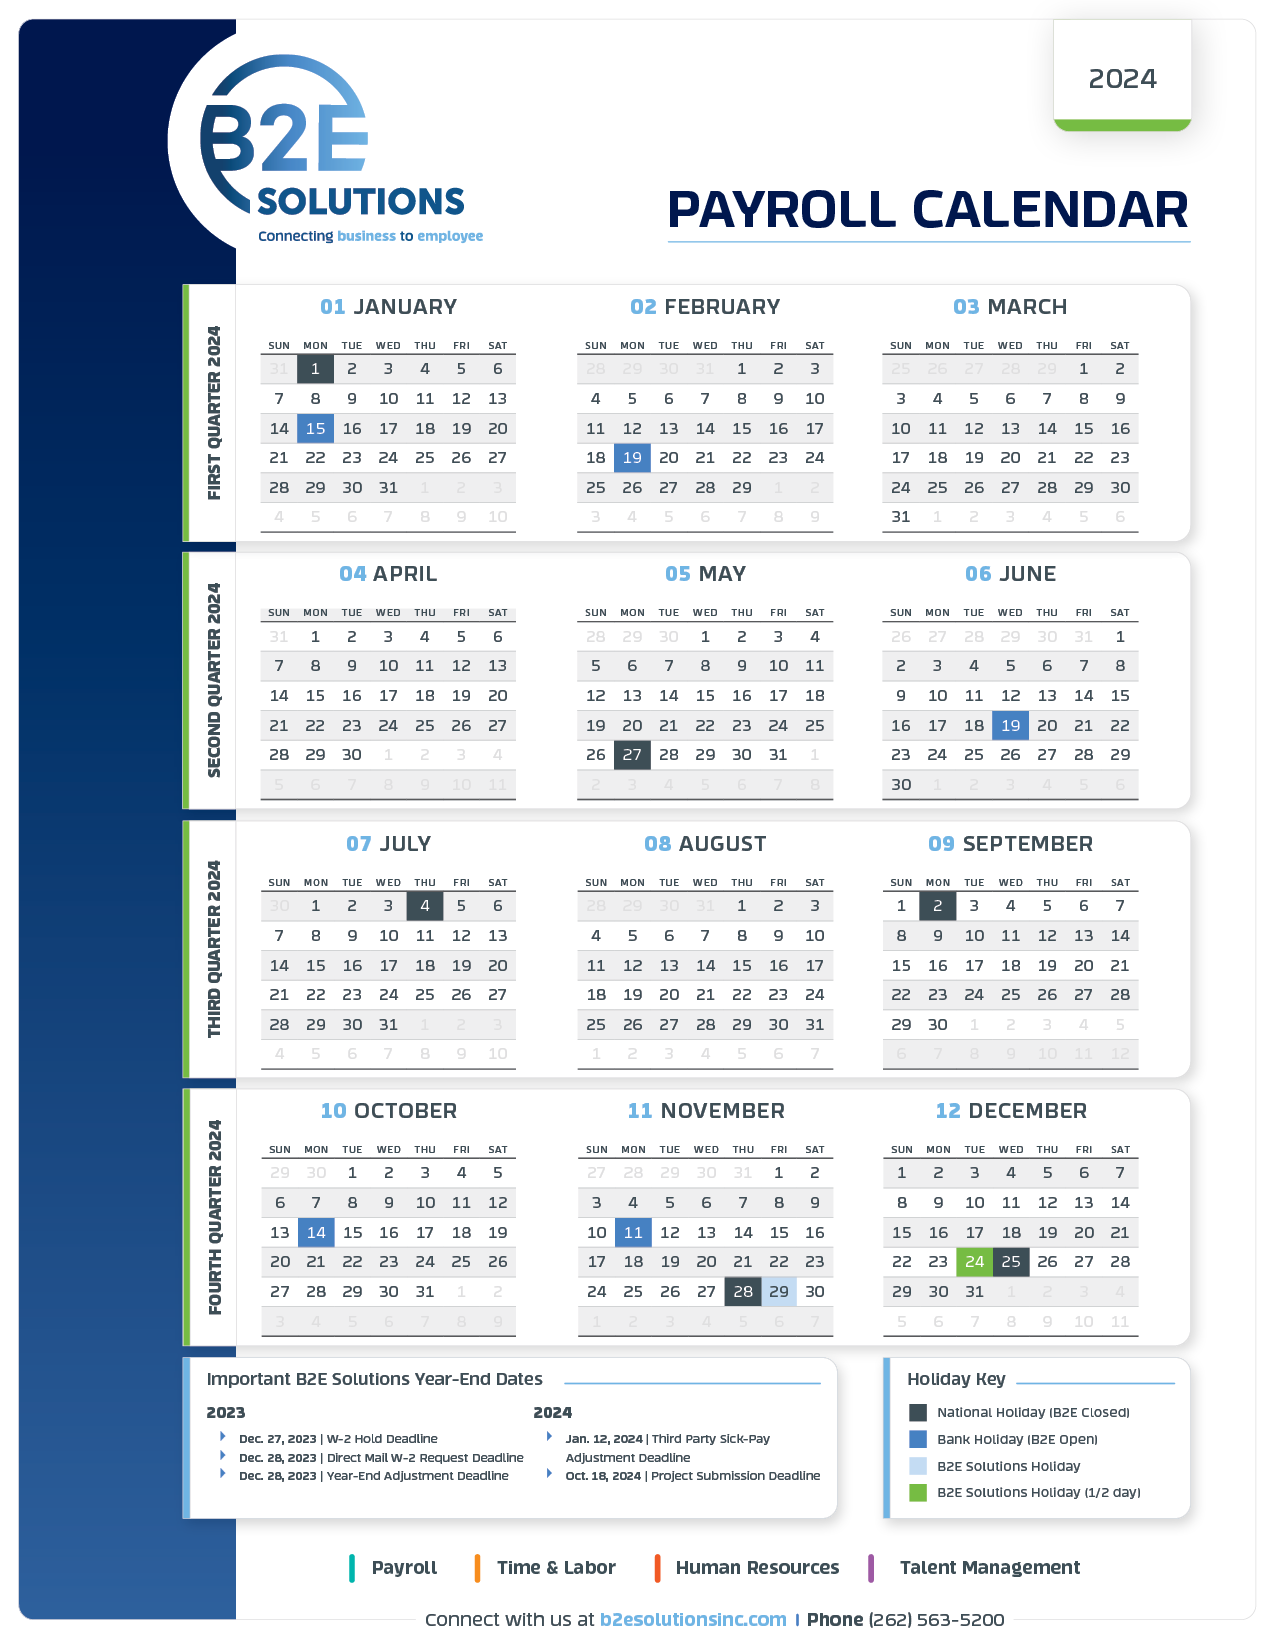 2024 payroll calendar